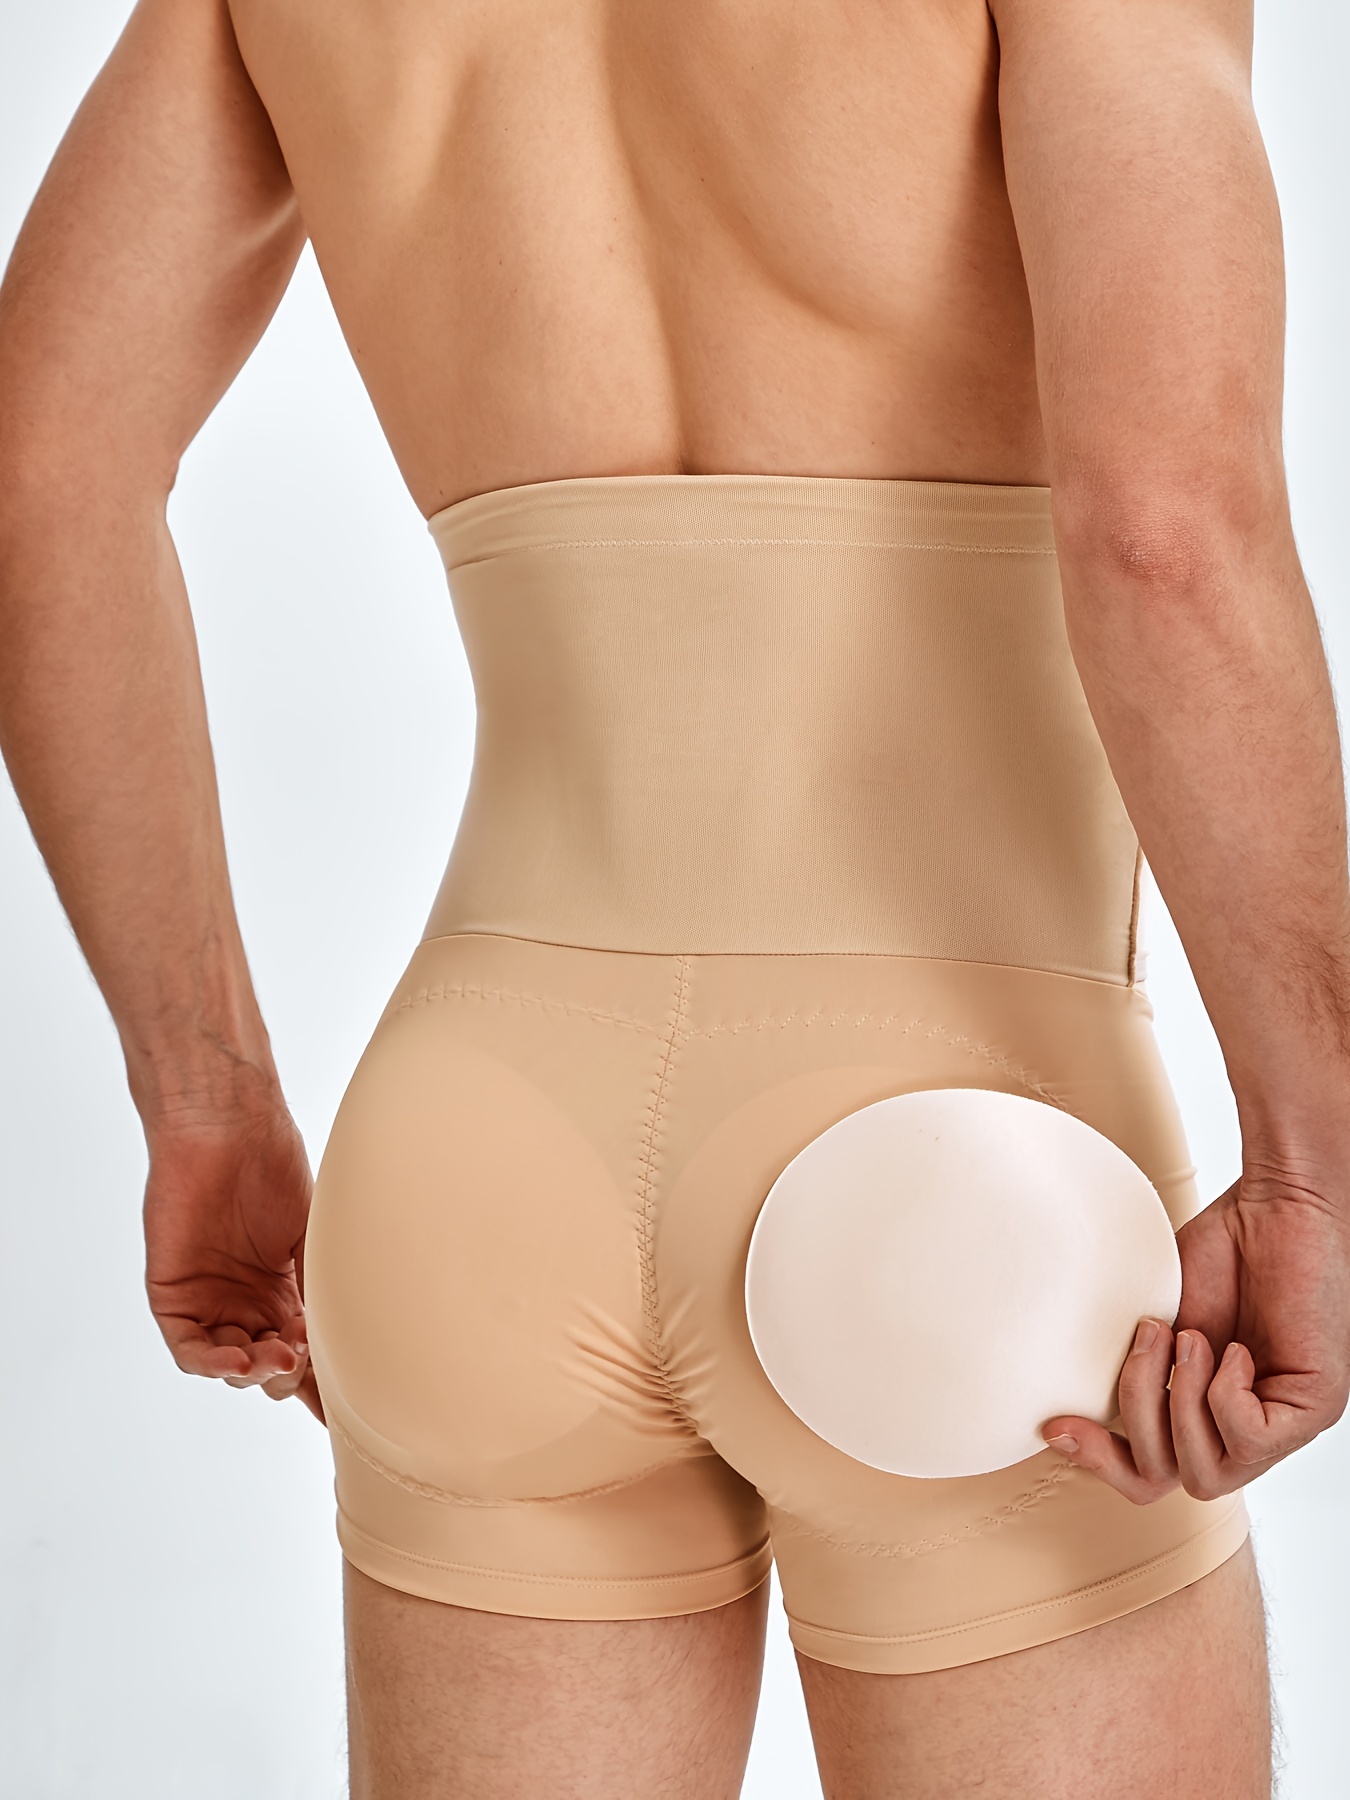 Butt Lifter Butt Enhancer And Body Shaper Hot Body Shapers Butt